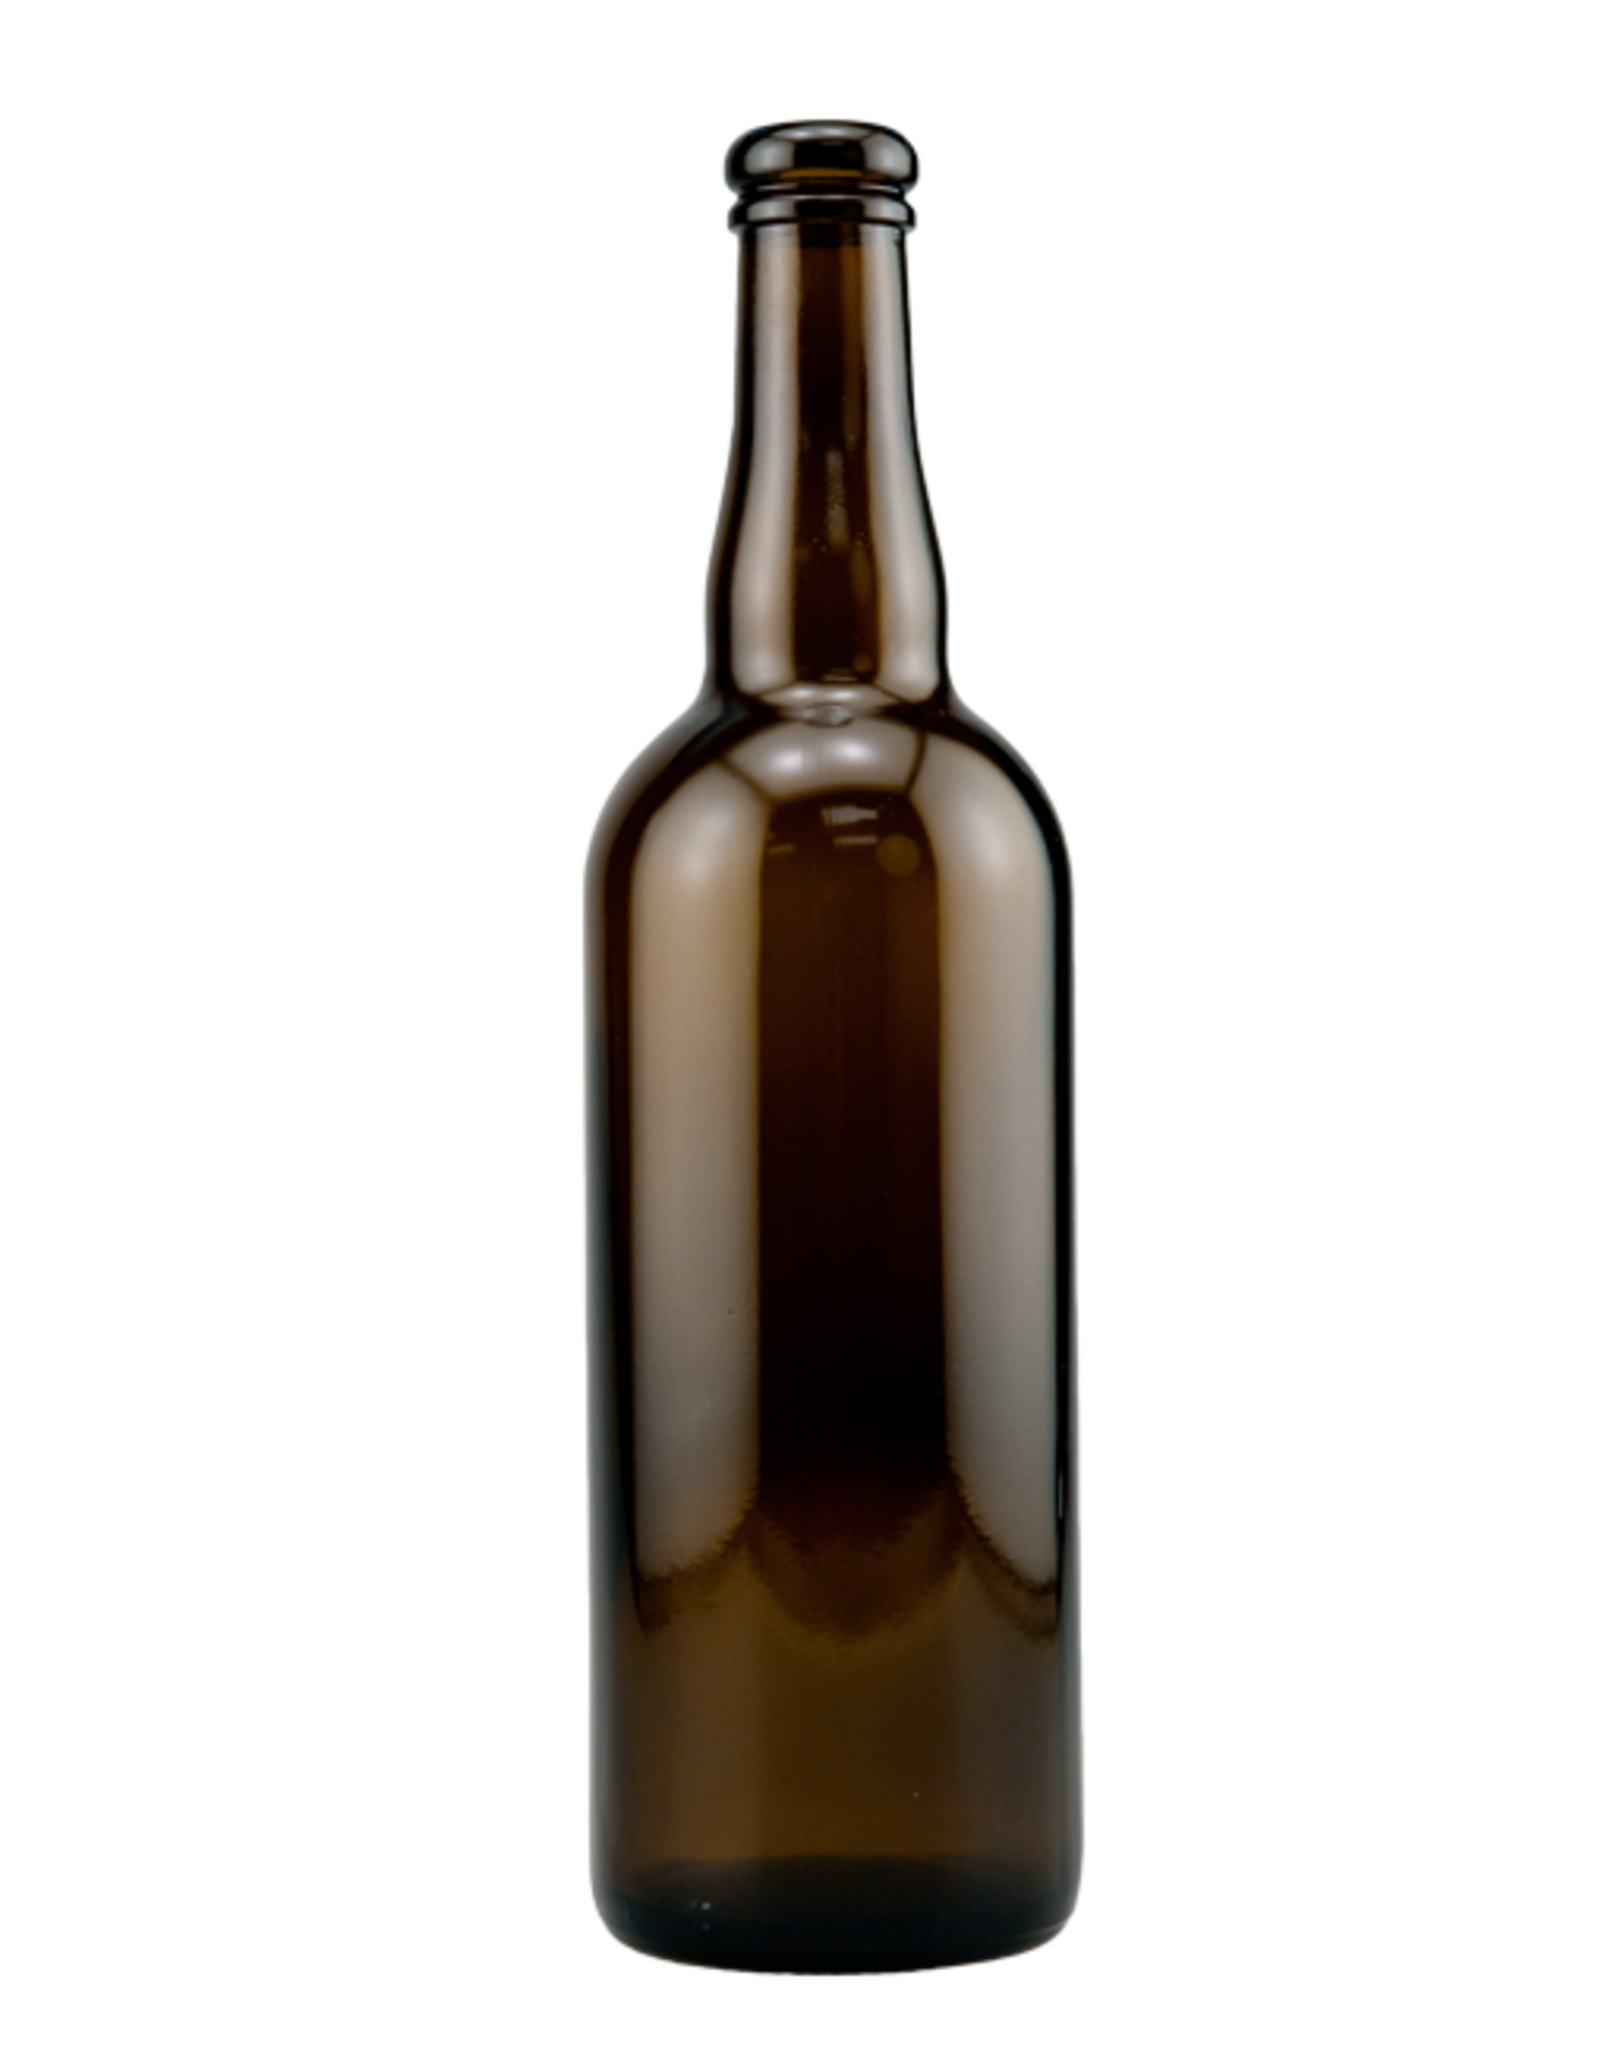 Bottle Amber Belgian 750ml 12/CS